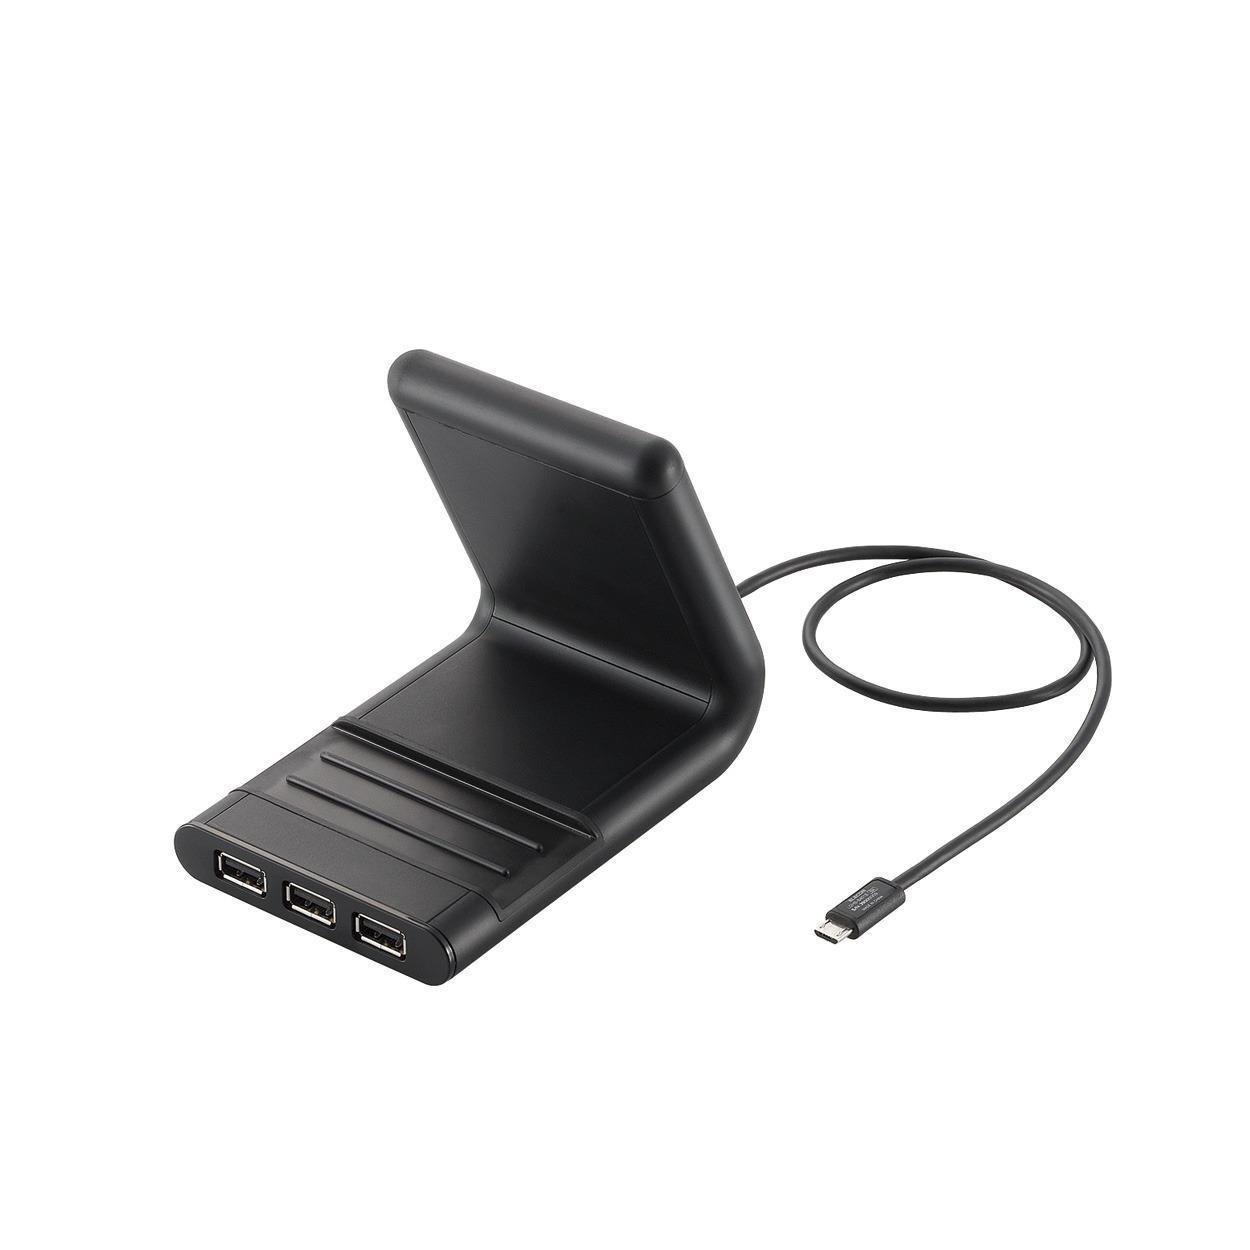 2013年モデルエレコム USBハブ 2.0対応 4ポート ACアダプタ付 microB-USB[A]変換アダプタ付 ブラック U2HS-S401SBK